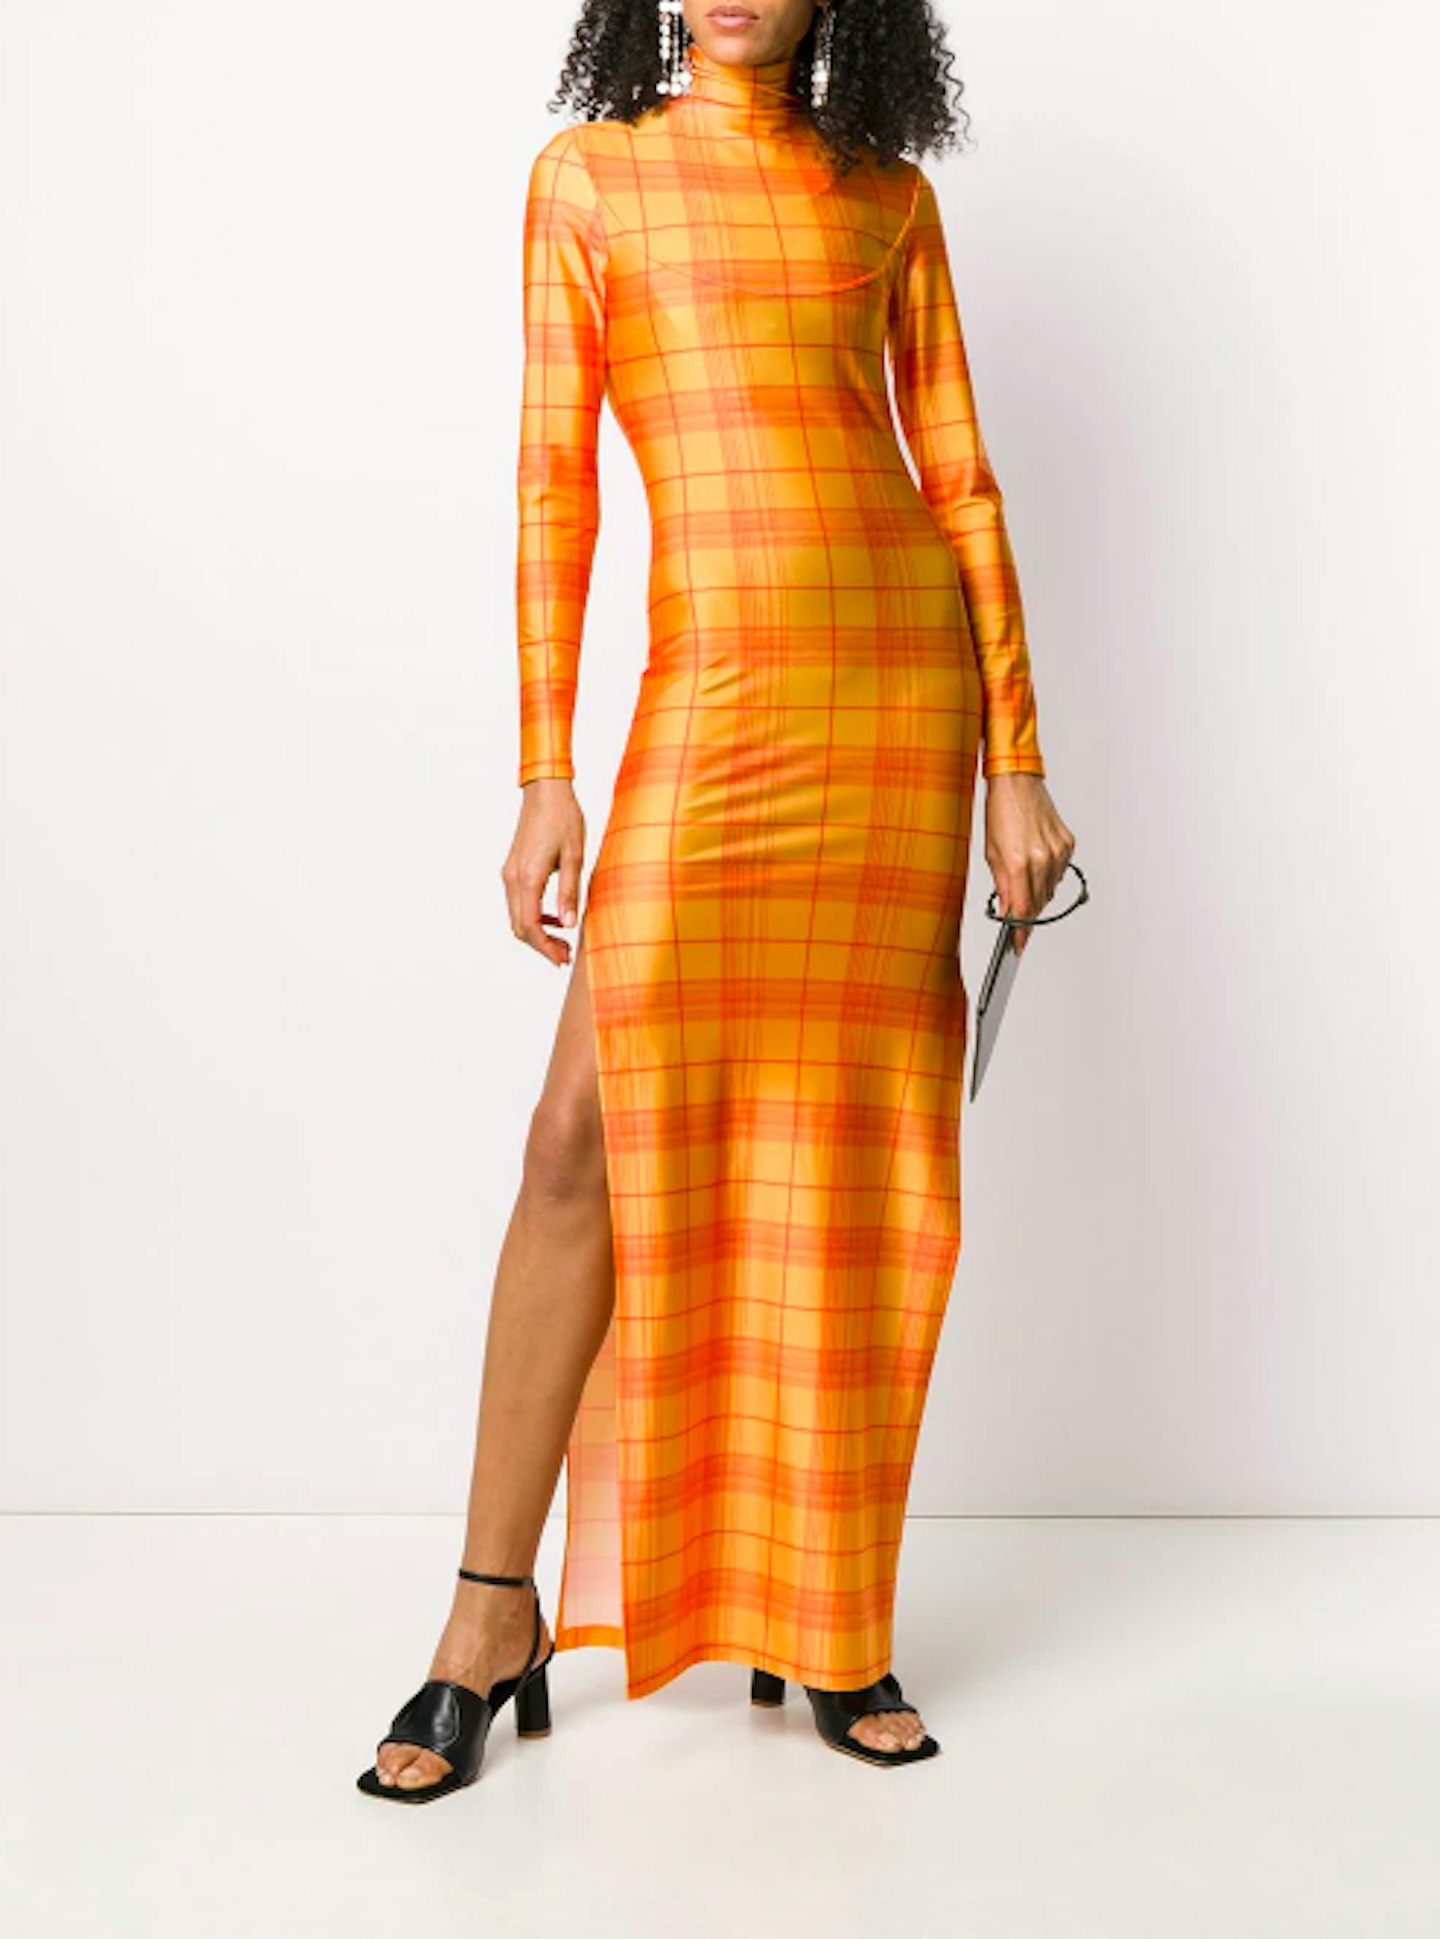 Supriya Lele, Check Print Dress, £334 at Farfetch